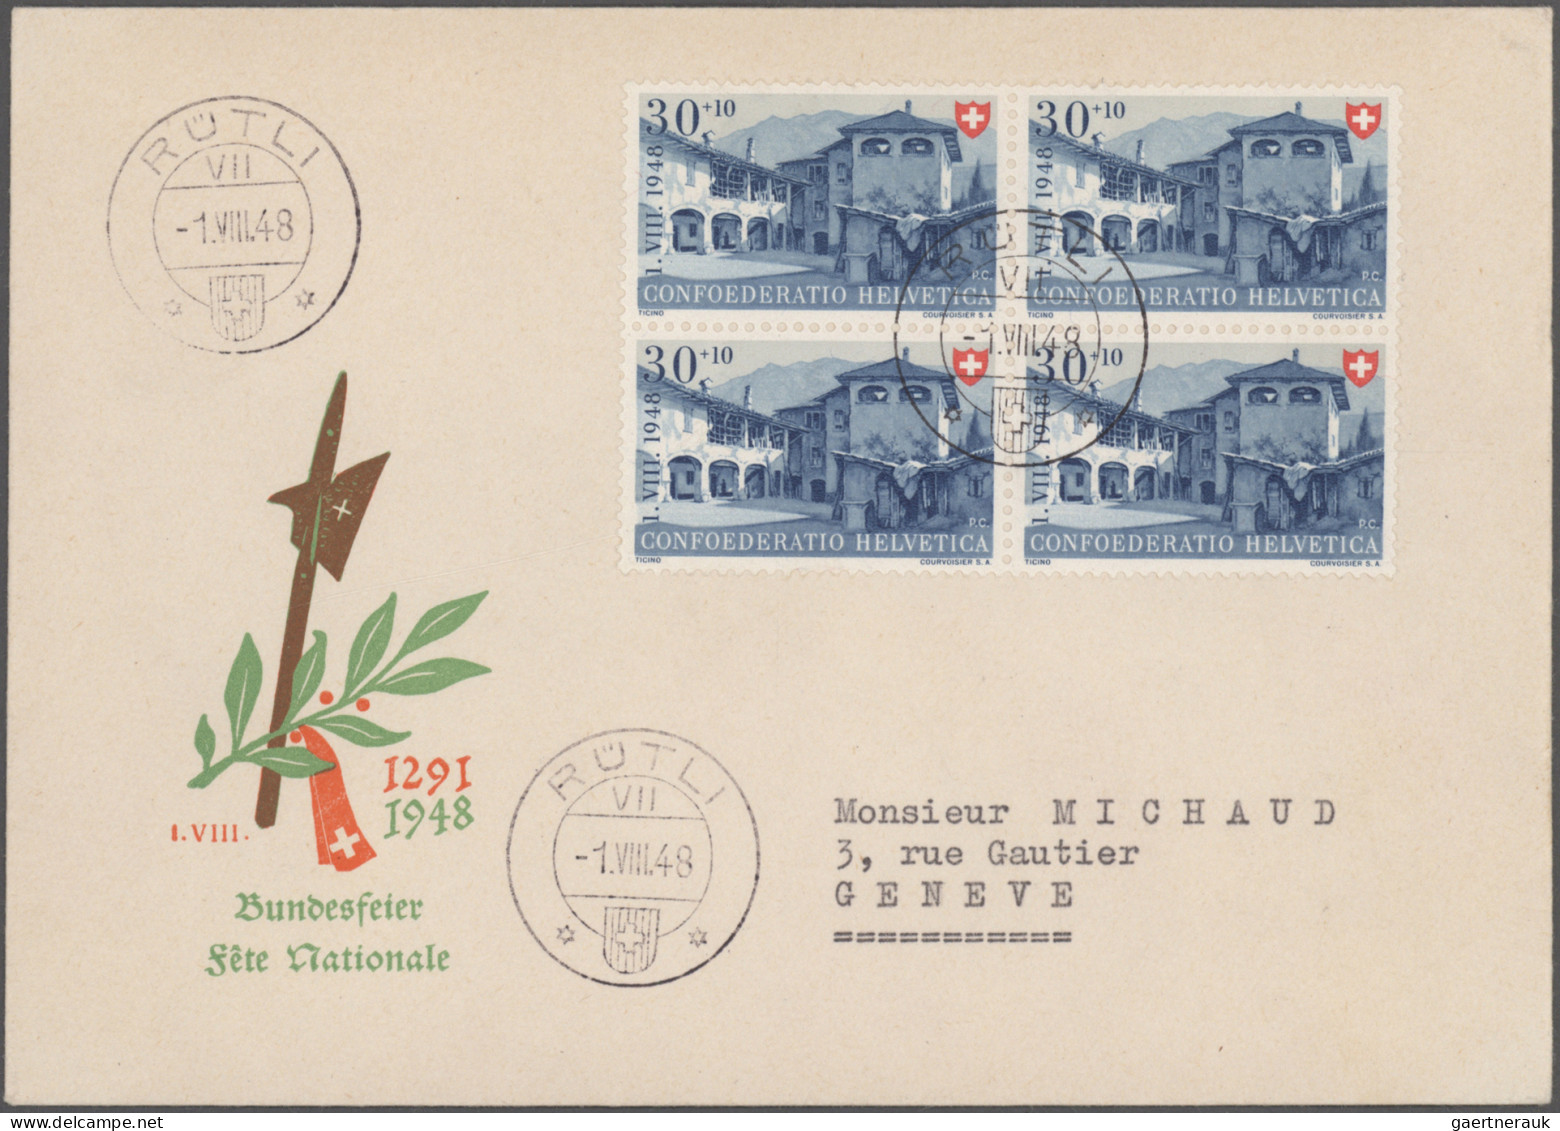 Schweiz: 1860/1960er Jahre: Über 100 Briefe, Postkarten und Ganzsachen unterschi